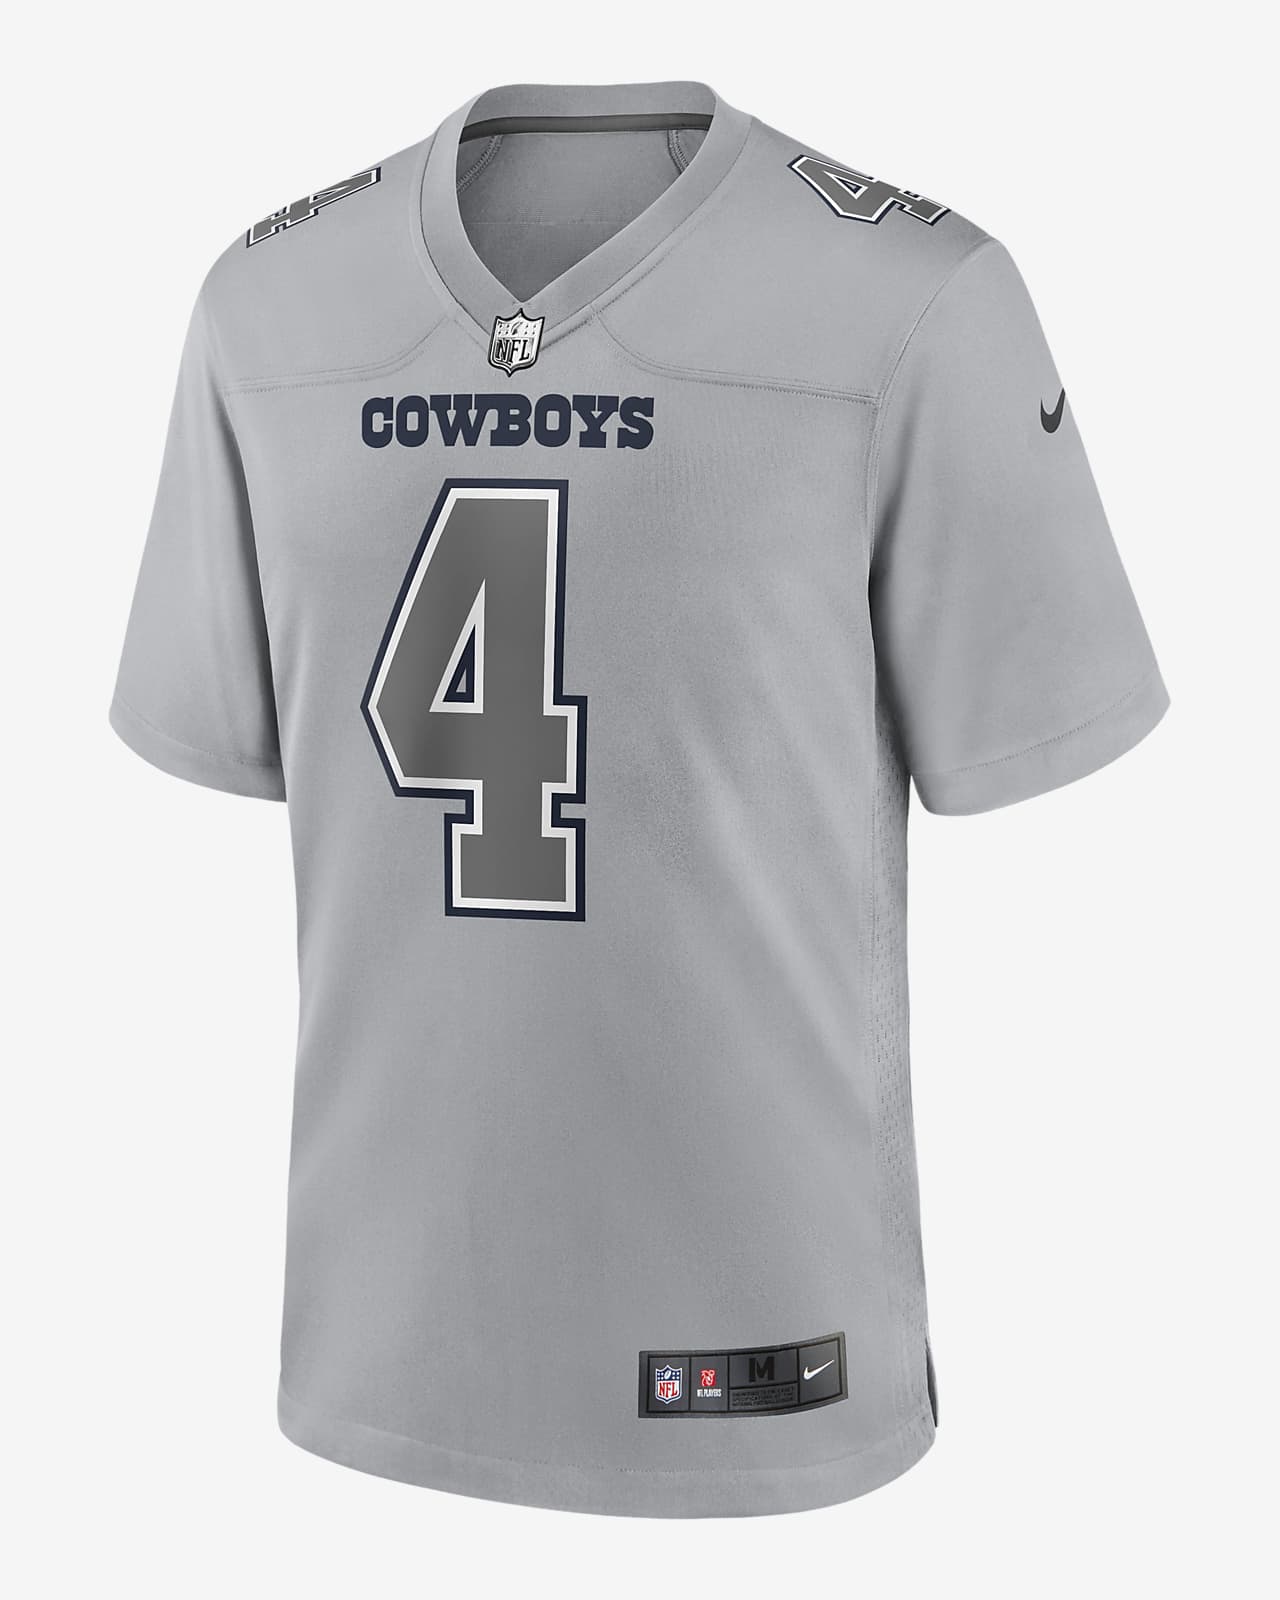 Jersey de fútbol americano NFL Atmosphere de los Dallas Cowboys (Dak Prescott), moda para hombre